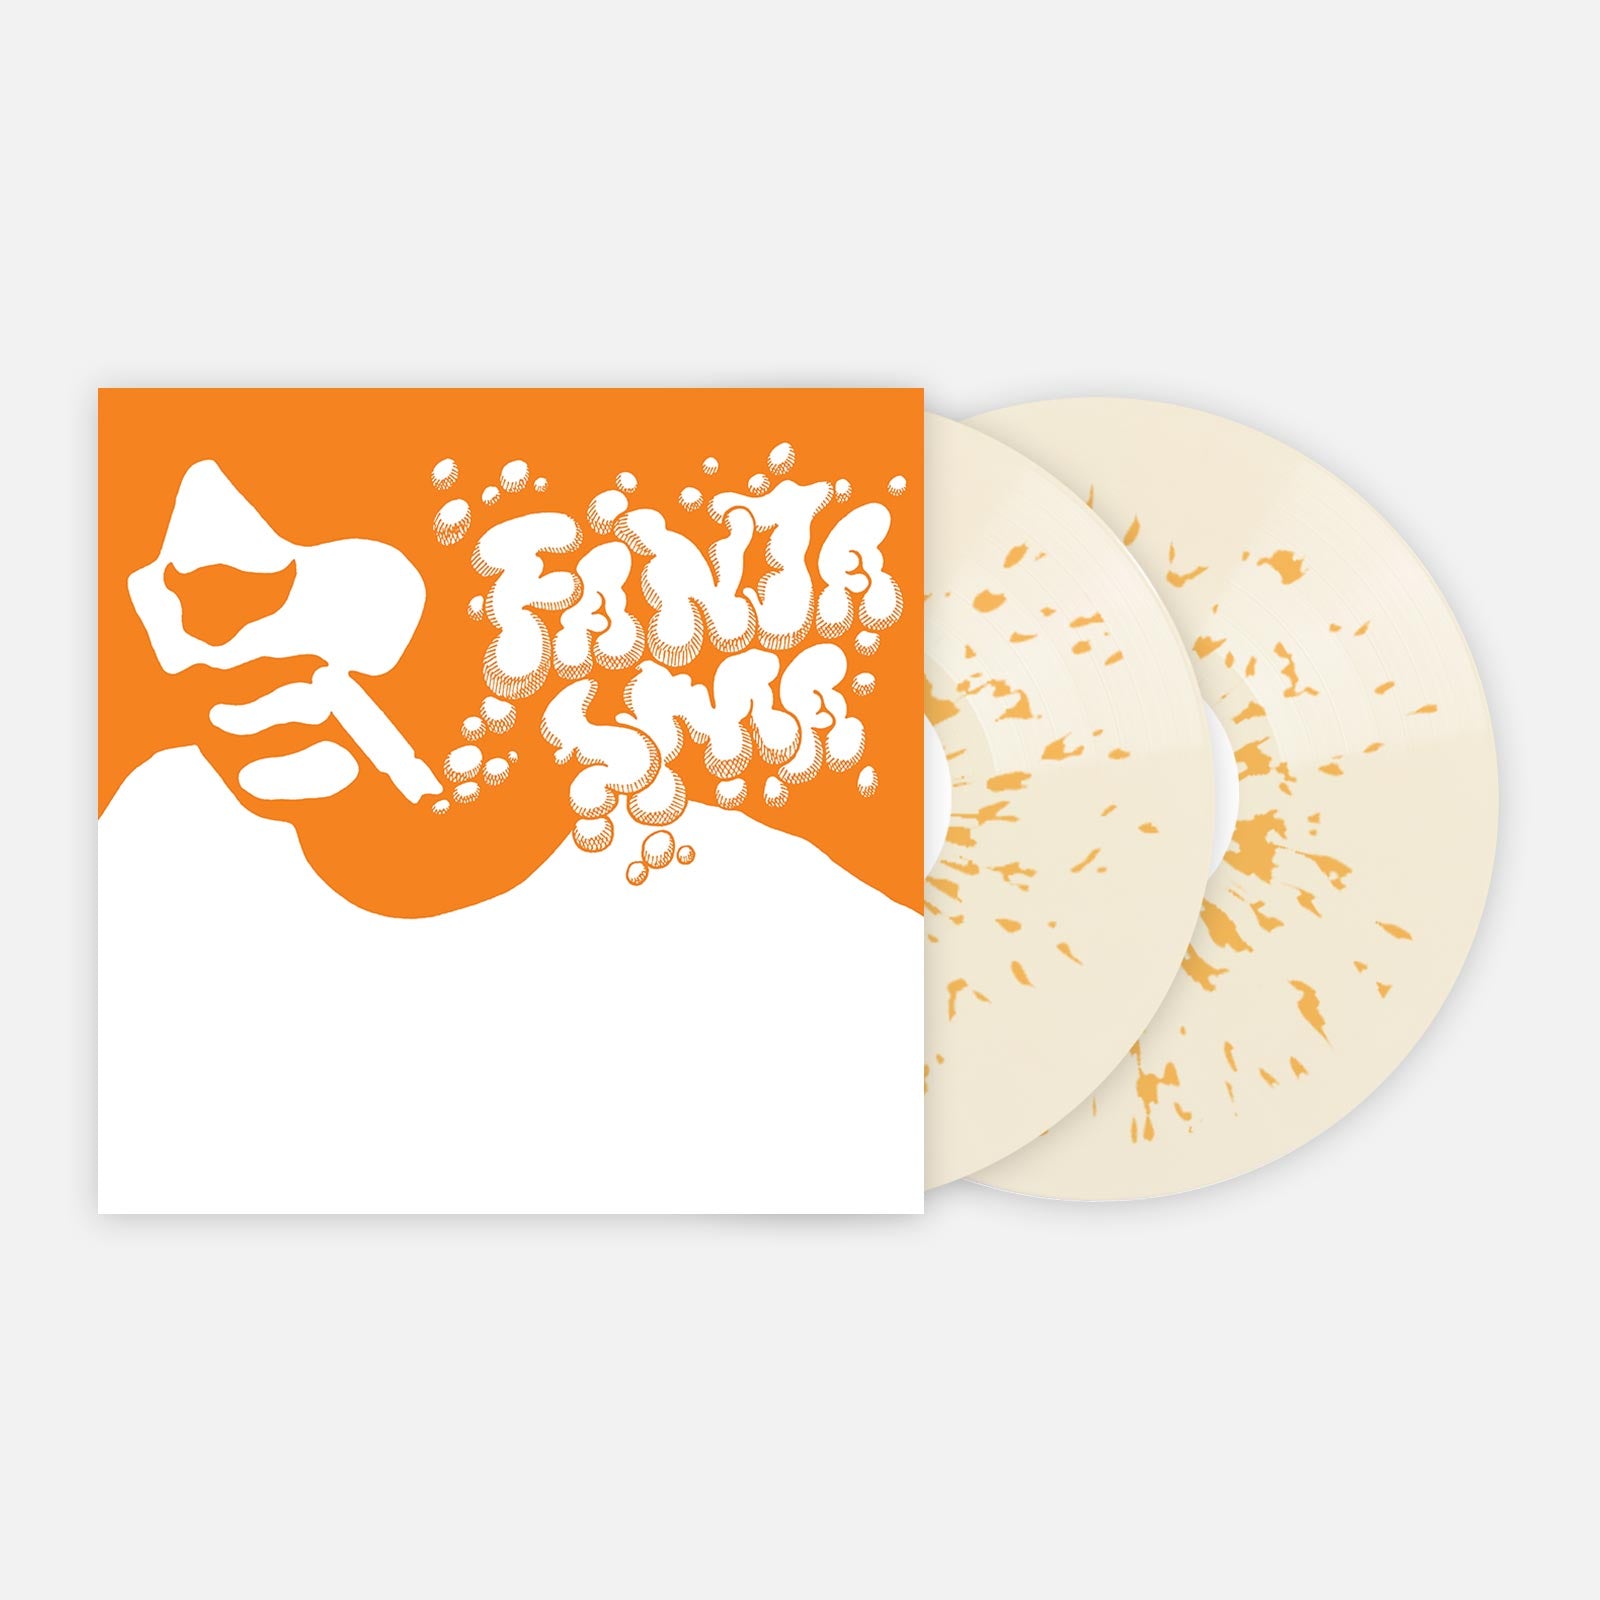 Cornelius 'Fantasma' - Vinyl Me, Please